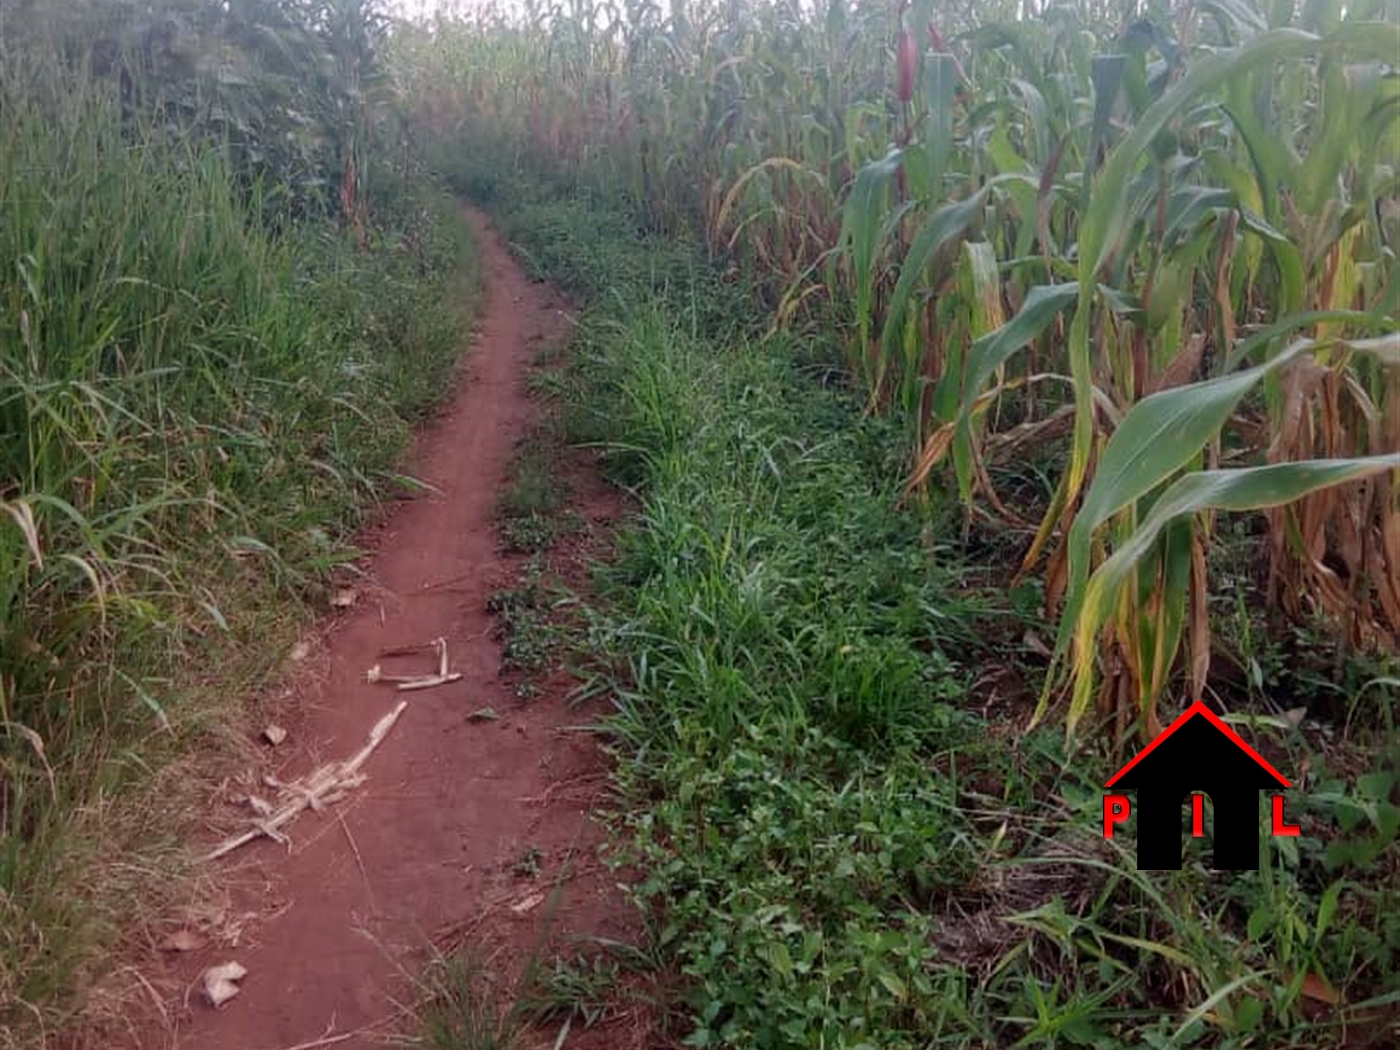 Agricultural Land for sale in Kyenda Kiboga